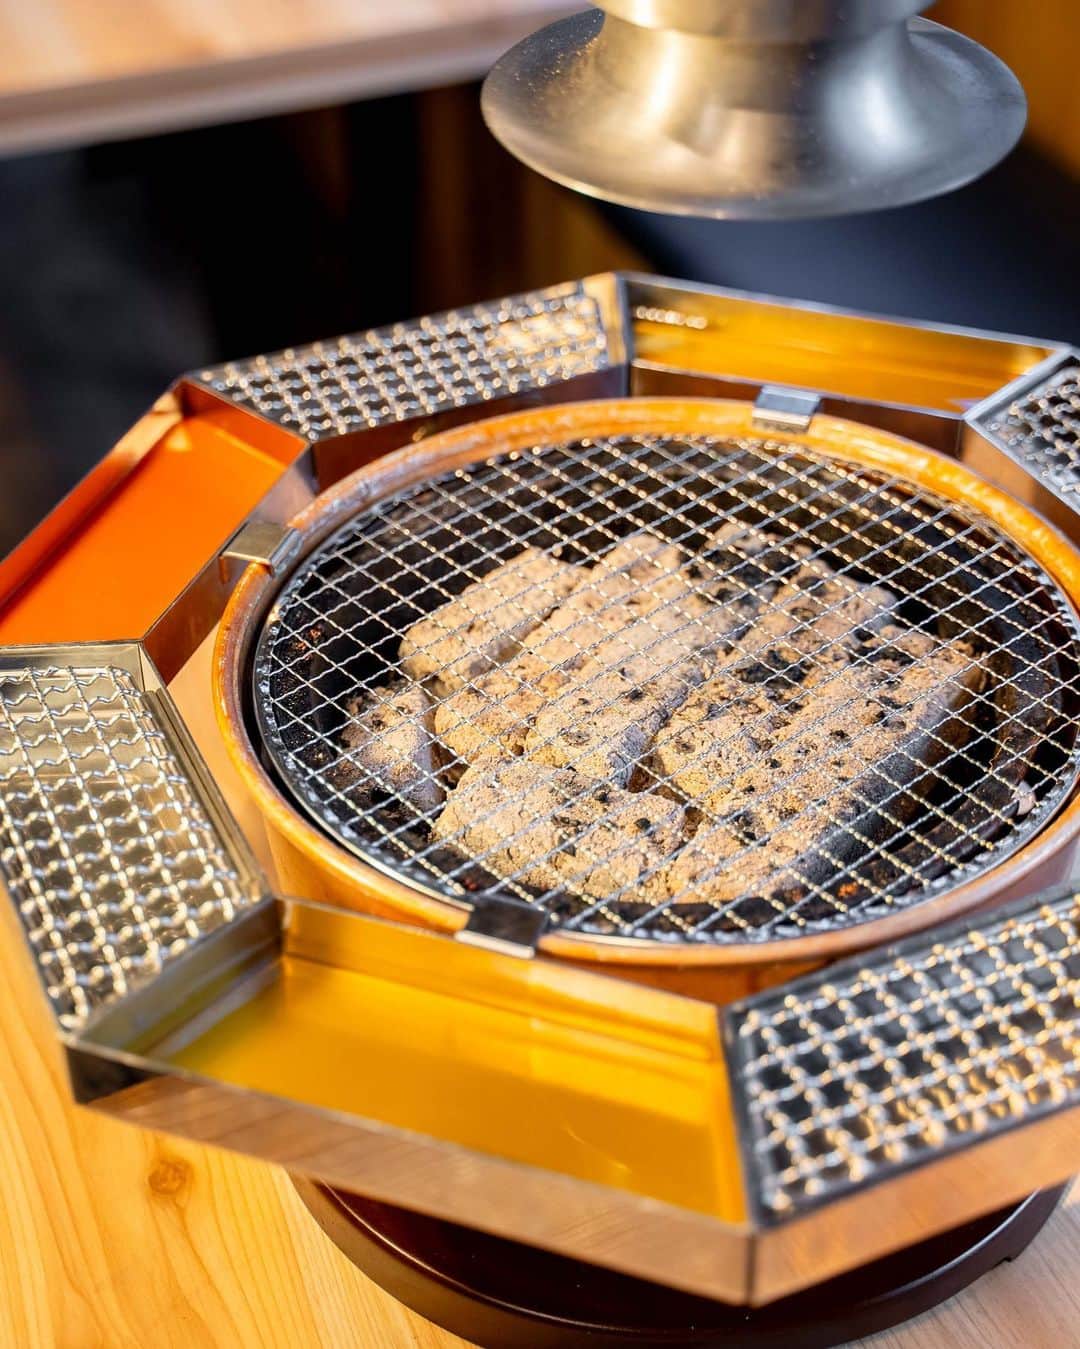 ナゴレコさんのインスタグラム写真 - (ナゴレコInstagram)「＼NEW OPEN🎉焼肉を“くぐらせて”食べる！京風スタイルでいただくユニークな大衆焼肉店🥩／  子どもから大人まで楽しめる“焼肉”。 焼肉といえば、焼いたお肉にタレやお塩など好みの味付けをしていただくのが一般的なイメージですよね💭  実は、関西・京都の地では独特な焼肉文化があり、焼いたお肉を“洗いダレ”という透明なタレにくぐらせていただく食べ方が根付いているのだそう🥢  今回は、名古屋で京風スタイルの焼肉が楽しめるユニークな大衆焼肉店をご紹介✨  京都のブランド牛を使った豪快な塊肉や種類豊富なユッケメニューなどにも注目です👀💕  👉 @kuguru_takahashi  今回ご紹介するのは、栄にある大衆焼肉店「炭火焼肉 くぐ琉（くぐる）」さん。 地下鉄東山線・名城線 栄駅から徒歩5分ほどで到着👟  お店は飲み屋が多く立ち並ぶ錦エリアに位置していることもあり、なんと24時間営業🏮  1軒目はもちろんのこと、2軒目、シメの3軒目としても気軽に利用できそうですね◎  ●“洗いダレ”でいただく焼肉メニュー  カルビやタンなど、王道の牛メニューから4種類をピックアップ。 牛のほかにも鶏や豚、ホルモンなど焼肉メニューが豊富なくぐ琉さんですが、イチオシは京都のブランド牛「平井牛」を使った牛焼肉🥩  毎月10頭しか出荷されない希少なブランド牛ですが、一頭買いをしているため、平井牛のいろんな部位をリーズナブルな価格で楽しめるのです✨  そして、お店最大の特徴が“洗いダレ”と呼ばれる特製のタレをくぐらせていただく京風の焼肉スタイル🥢 さっぱり&ピリ辛の2種の特製洗いダレにお肉をくぐらせ、香味野菜を合わせて食べると、とっても美味しい💕  ジューシーで柔らかいお肉と香味野菜のシャキシャキ食感が相性抜群です◎  ●スタミナホルモン盛り合わせ  牛ホルモンやセンマイ、レバー、ミノ、てっちゃんなどをおろしニンニクと付け合わせたスタミナアップ間違いなしの一品です🐮 こちらも、ニンニクはもちろんのこと、洗いダレにさっとくぐらせていただくのもおすすめですよ◎  ●インパクト大！テンションが上がる豪快な塊肉メニュー  タン、ロース、ハラミを豪快に塊ごといただくことができるこちらのメニュー🔥 写真で見る以上にインパクトがあり、運ばれてきた際は思わず声をあげてしまうほど！  コクのある濃いめの特製ダレにつけ2度焼きすることで、お肉の香ばしさがアップ💕 ご飯と合わせて食べたくなる、ヤミツキになるお味！  ●全12種類！個性的で種類豊富な生肉メニュー くぐ琉さんでは、生肉を扱ったメニューもとても豊富✨ ユッケだけでも10種類あり、他ではあまり耳にしない珍しいユッケも楽しめます。  中でも「塩ミルフィーユユッケ」は、ネギのシャキシャキ感と卵黄のトロッと感が楽しめるおつまみにぴったりの一品💕  辛味のある「チャンジャユッケ」もついついお酒がすすんでしまう美味しさです🍺 くぐ琉さんは京都のお酒も豊富なので、ぜひそちらも合わせて注文してくださいね！  ●茶そば ツルッとした喉越しで、お腹が膨れていてもさっぱりといただける茶そばは〆にピッタリ🥢  デザートにはもなかを使ったアイスなどもあり、メニューの随所に京都らしさが感じられました👘  ／ 24時間営業の大衆焼肉店「炭火焼肉 くぐ琉」さんで京都の焼肉文化を体験しよう🥩✨ ＼  洗いダレを使った京風スタイルの焼肉を中心に、豪快な塊肉や種類豊富なユッケ、京都を感じるサイドメニューまでたっぷりとご紹介しました✨  どこを切り取ってもこだわりを感じられるものばかりで、驚きの連続でした！ 京都の焼肉文化を名古屋で気軽に体験できるのは嬉しいですね🌿  みなさんもぜひ、「炭火焼肉 くぐ琉」さんで京風スタイルの焼肉を楽しんでみてください🥩  #ナゴレコ で、あなたの投稿をリポスト！ webサイト「ナゴレコ」もチェックしてね👀  ‥‥‥‥‥‥‥‥‥‥‥‥‥‥‥‥ PR #炭火焼肉くぐ琉」9月28日 12時39分 - nagoya_food